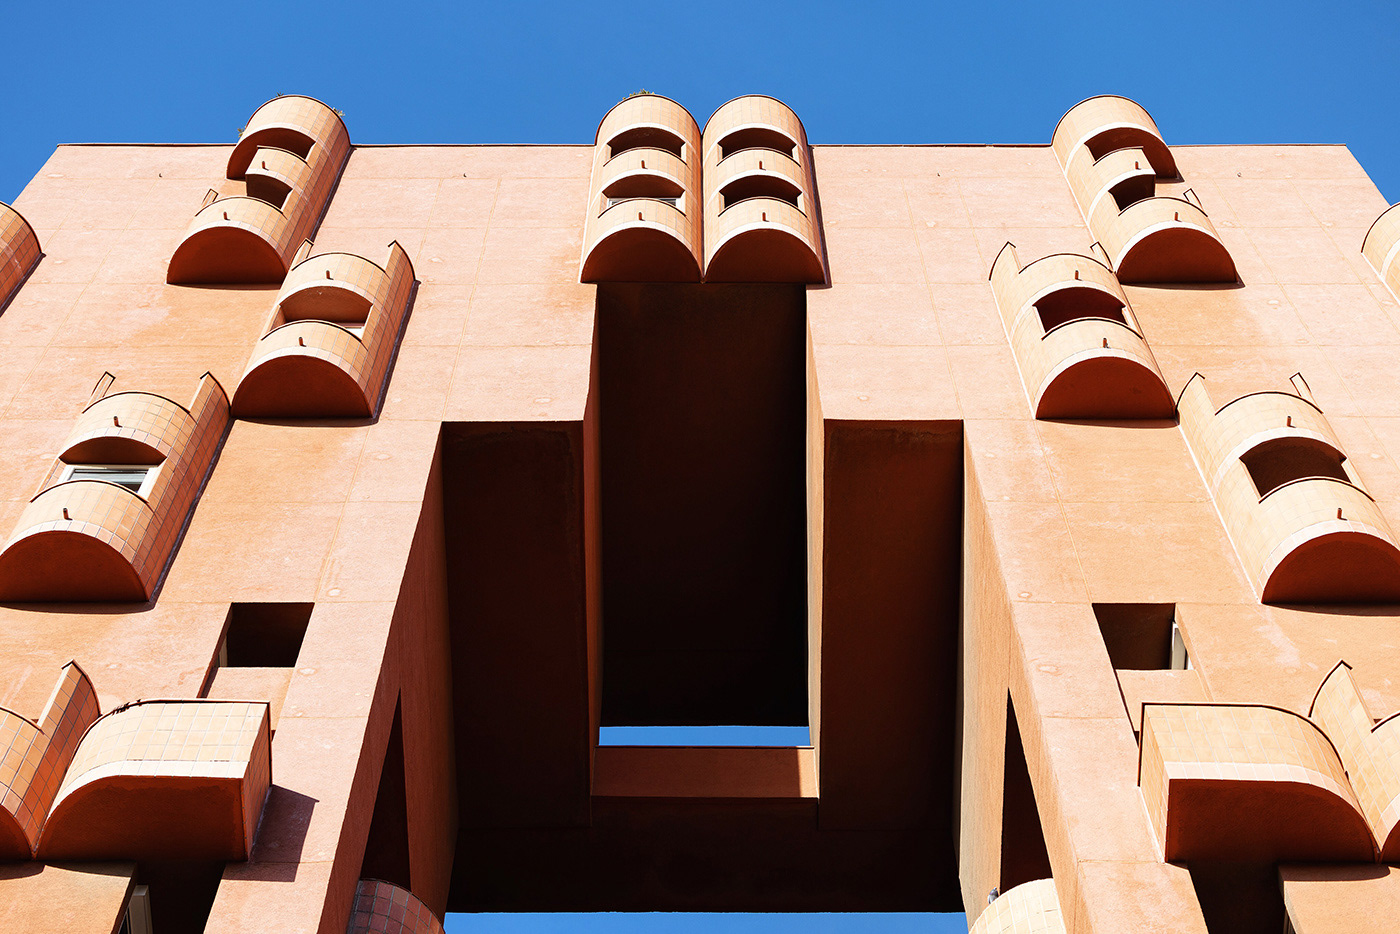 bofill walden7 barcelona architecture arquitectura postmodern concrete red spain design